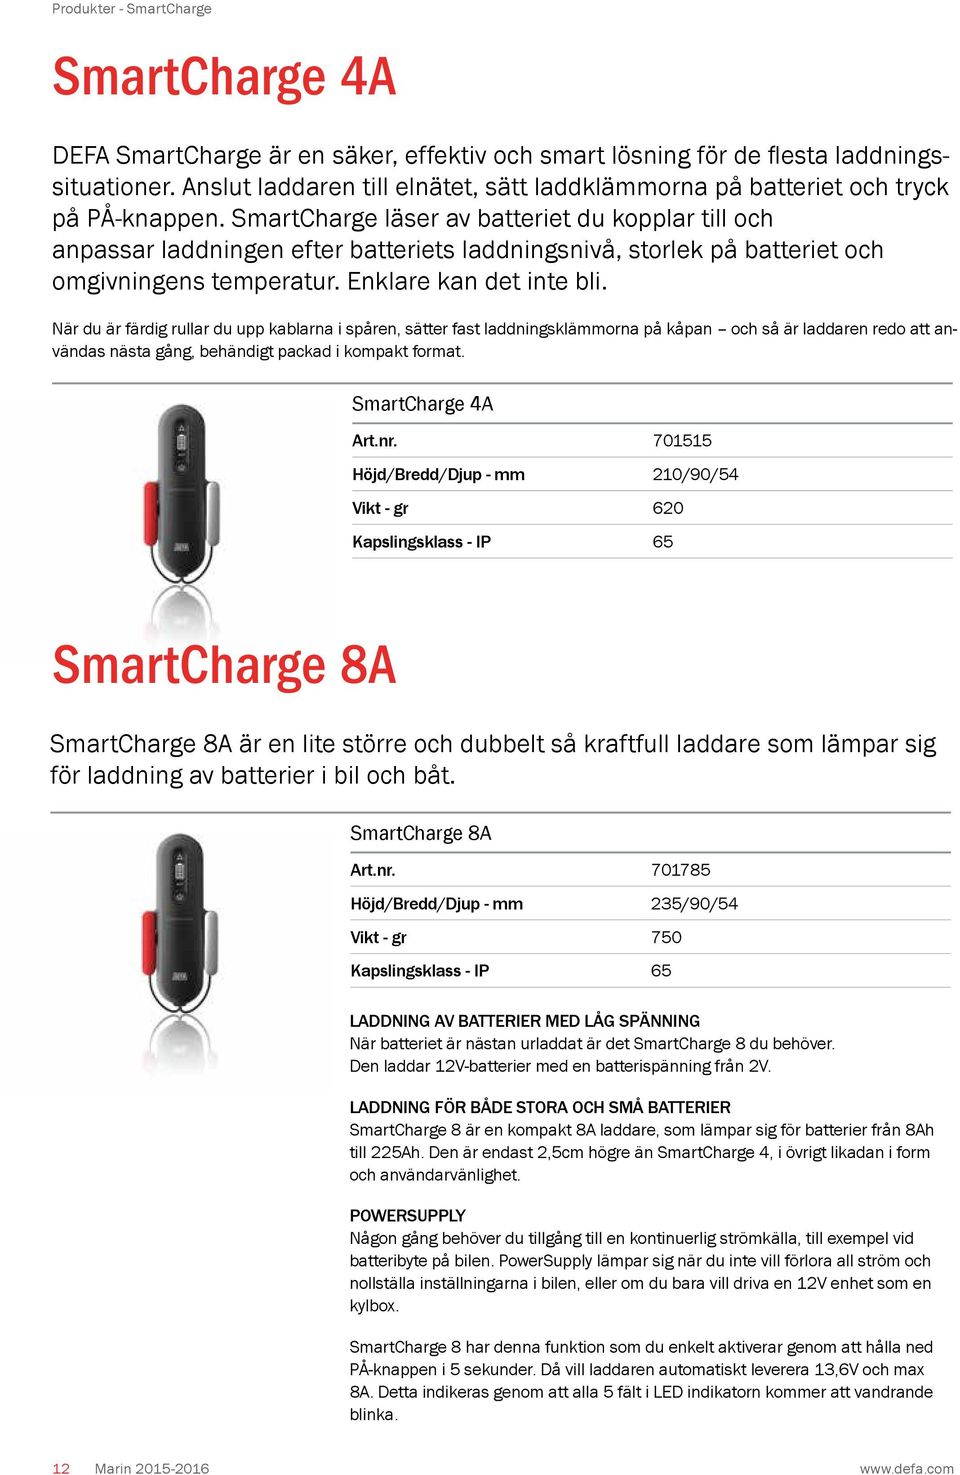 SmartCharge läser av batteriet du kopplar till och anpassar laddningen efter batteriets laddningsnivå, storlek på batteriet och omgivningens temperatur. Enklare kan det inte bli.